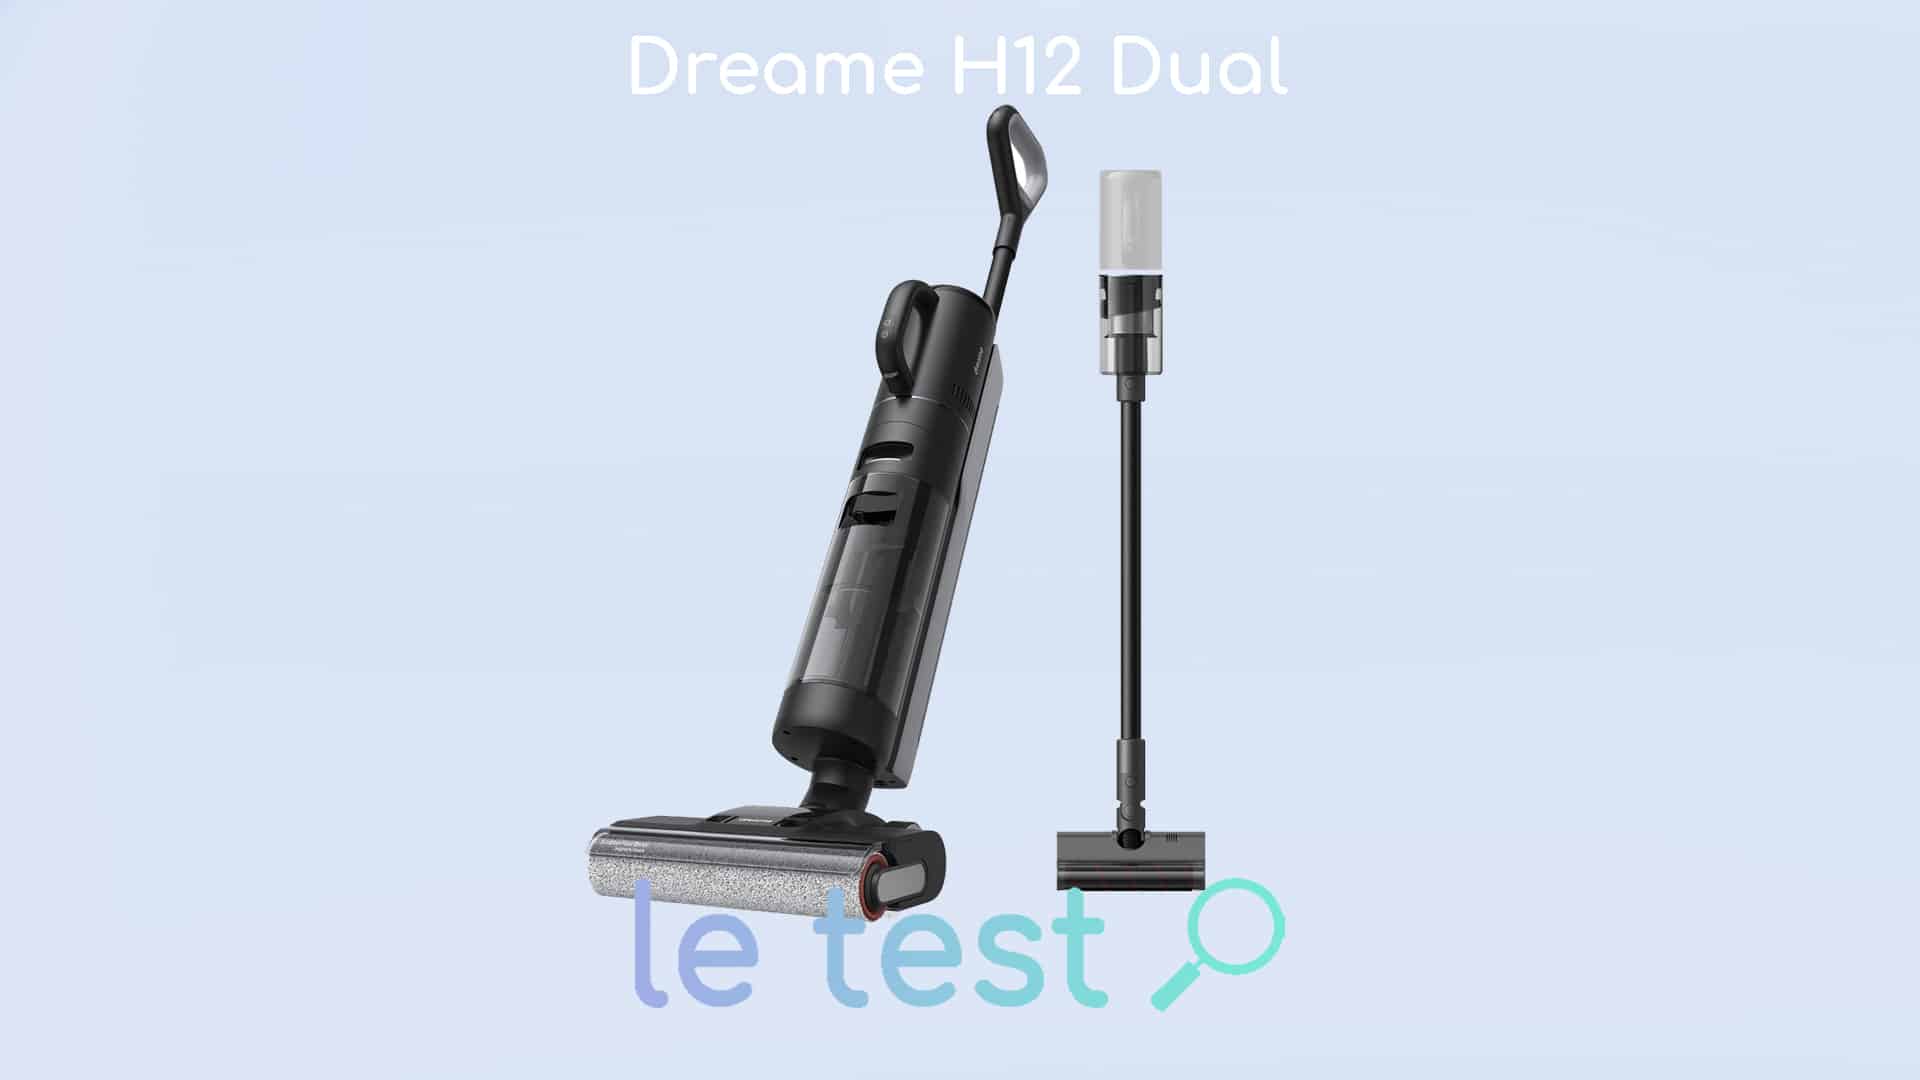 Dreame H12 Pro aspirateur humide et sec – Dreame France